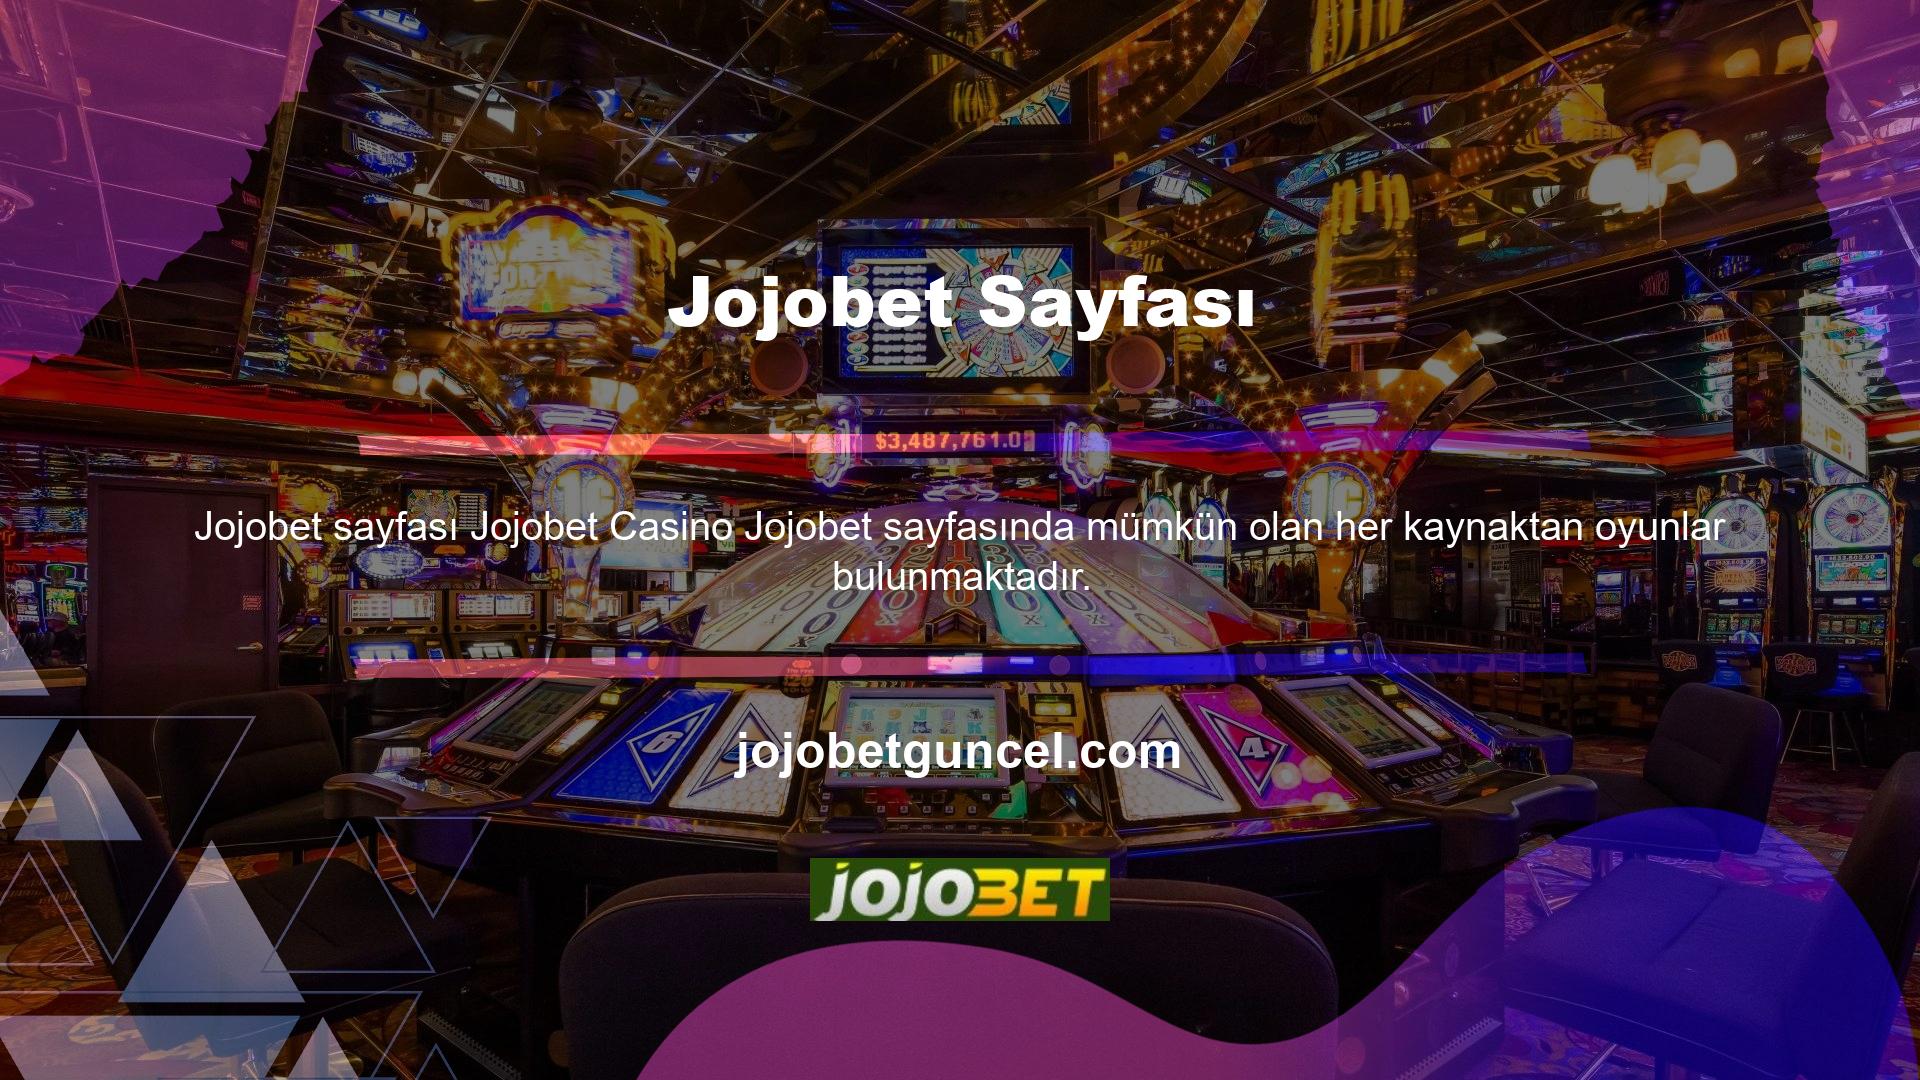 Jojobet slot makineleri: Oynamak için giriş yapmanız ve kaydolduktan sonra Casino sekmesine tıklamanız gerekmektedir